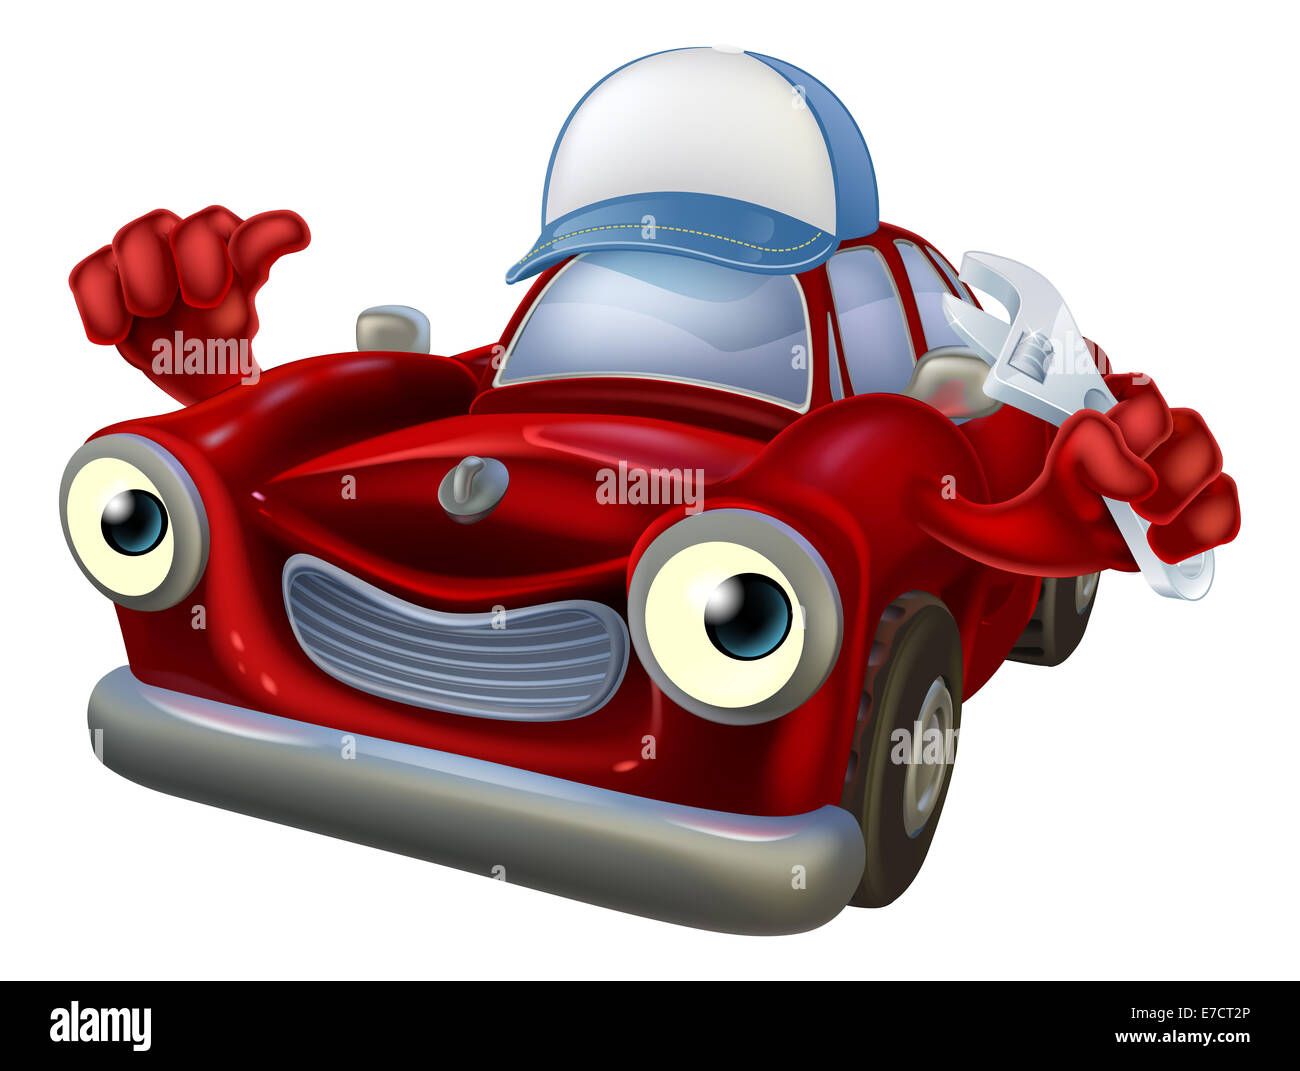 Une illustration d'une voiture rouge cartoon character portant une casquette de baseball hat et la tenue d'une clé tout en donnant un coup de pouce. Banque D'Images